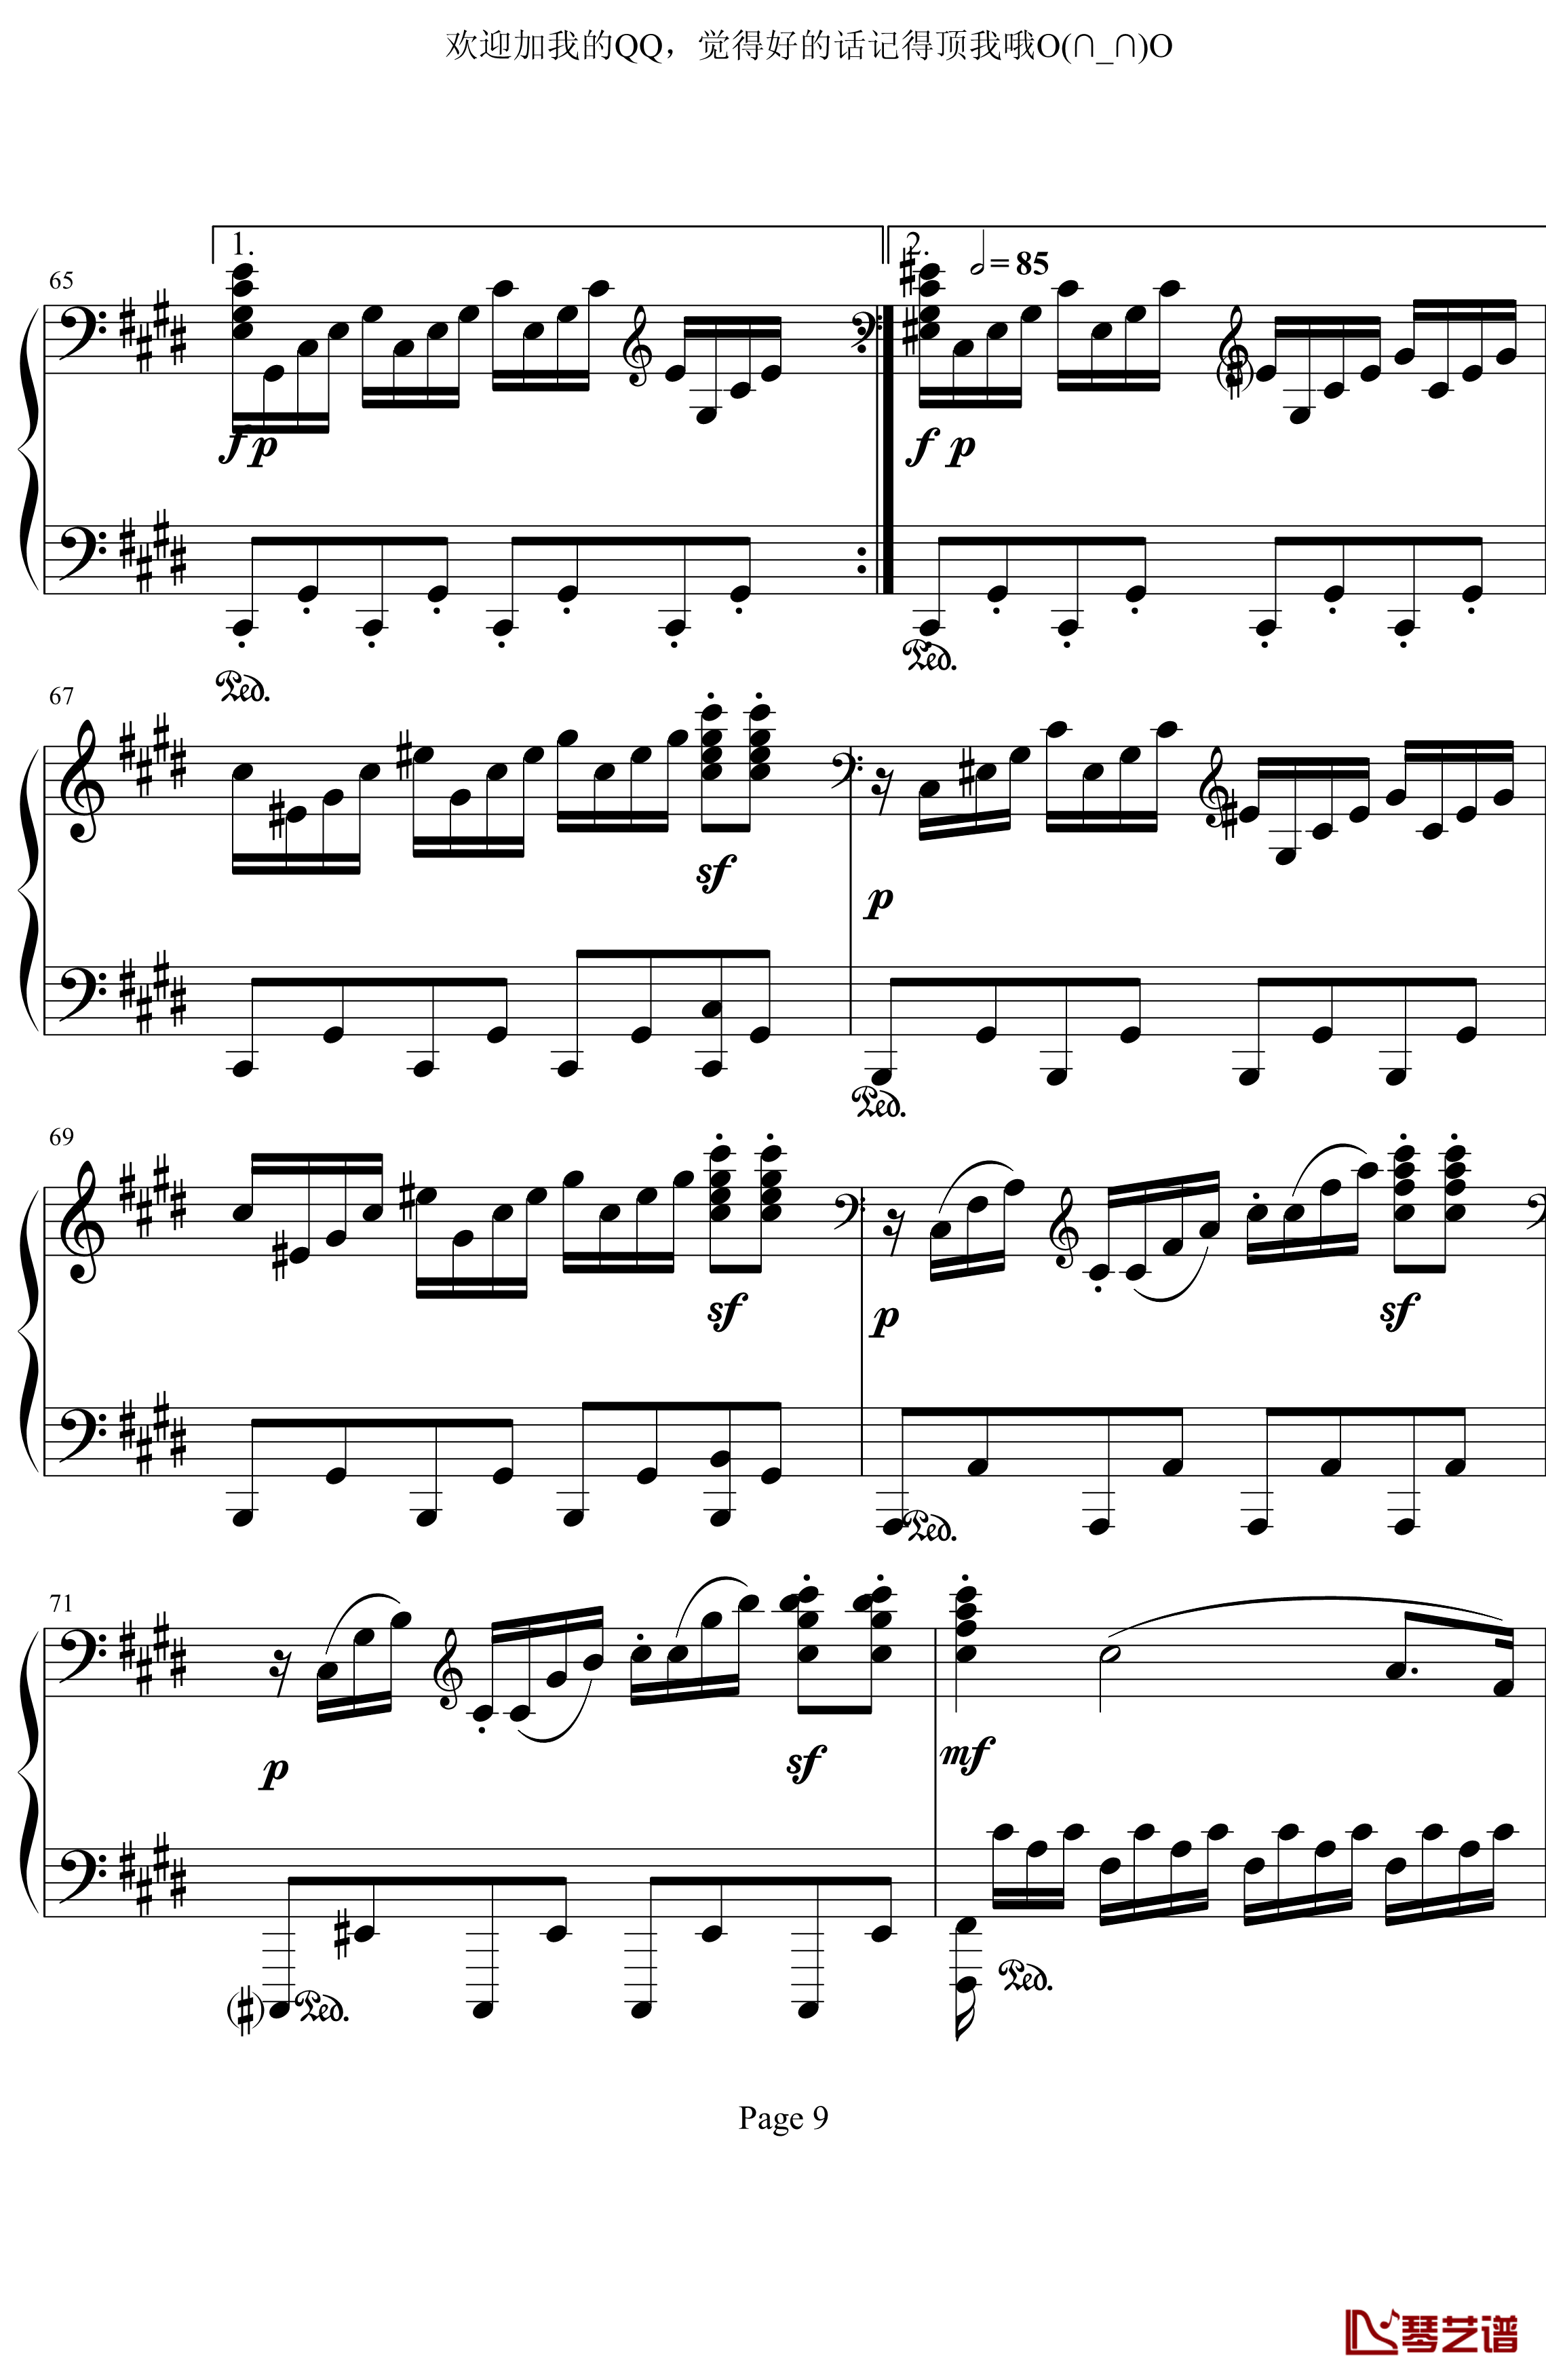 月光奏鸣曲第三乐章钢琴谱-贝多芬-beethoven9